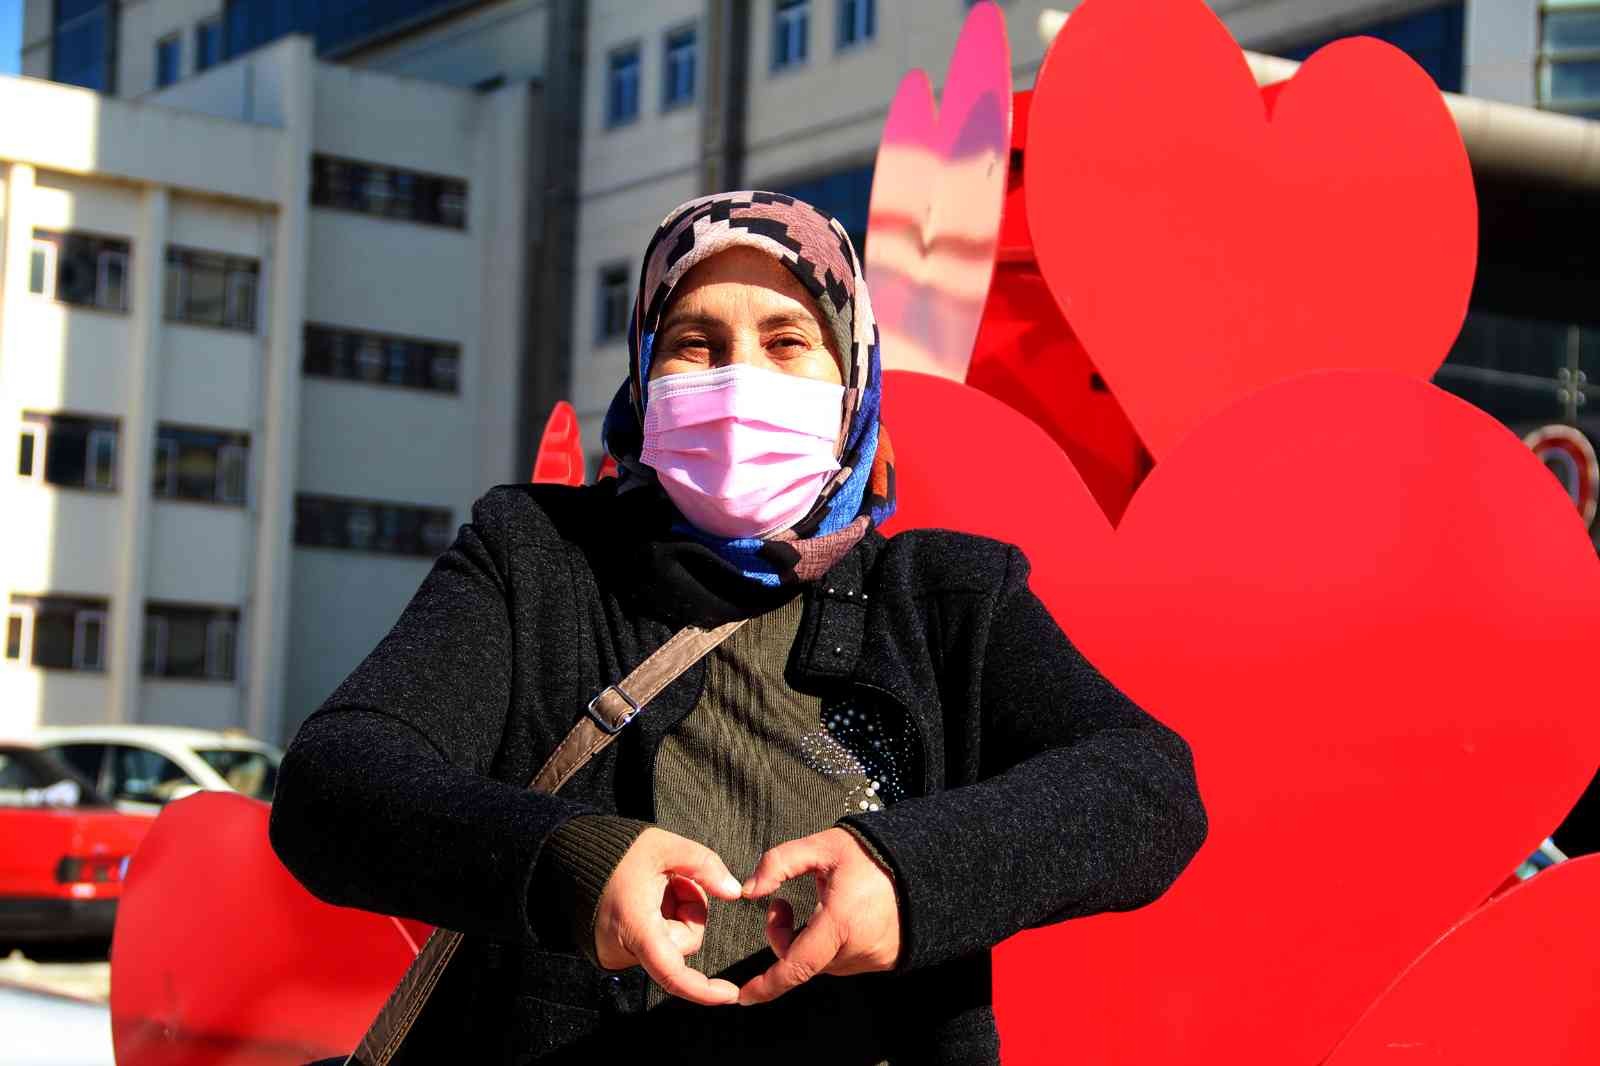 Antalya’nın ilk kalp nakilli hastası ’Ölüme gidiyorsun’ diyenlere inat kalp nakli oldu, 24 yıldır yaşıyor #antalya